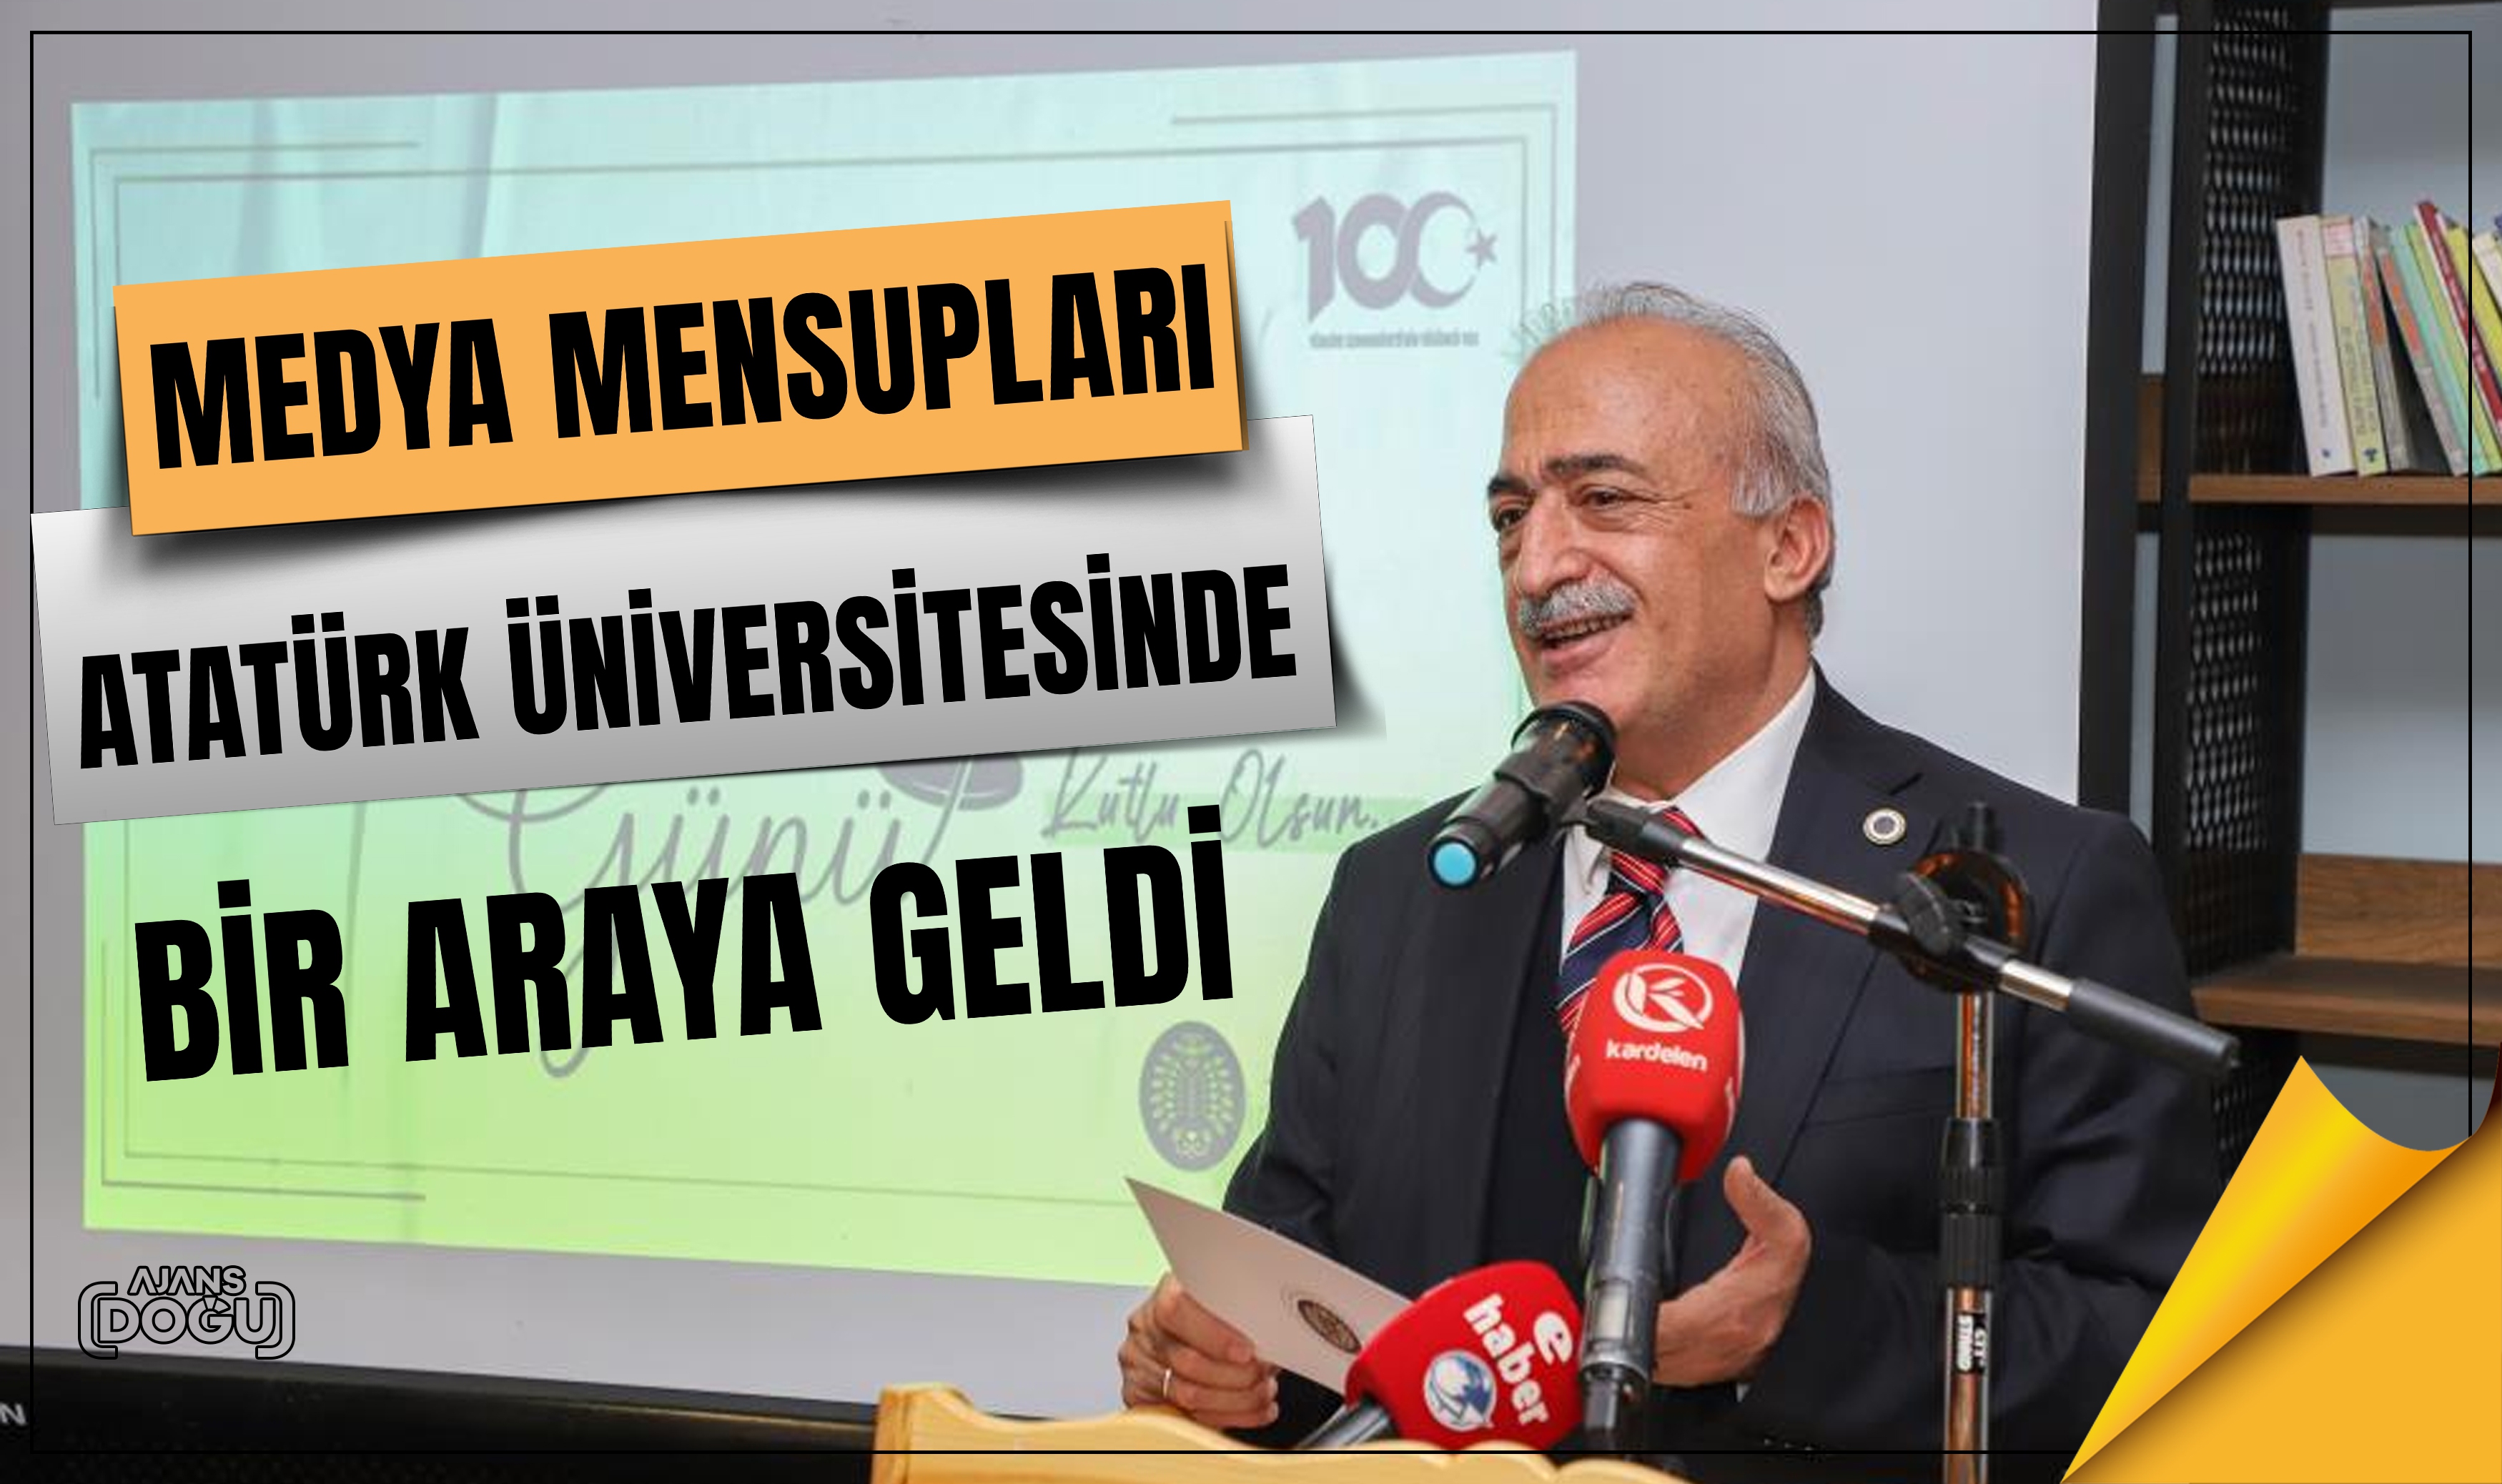 Medya mensupları, Atatürk Üniversitesinde bir araya geldi